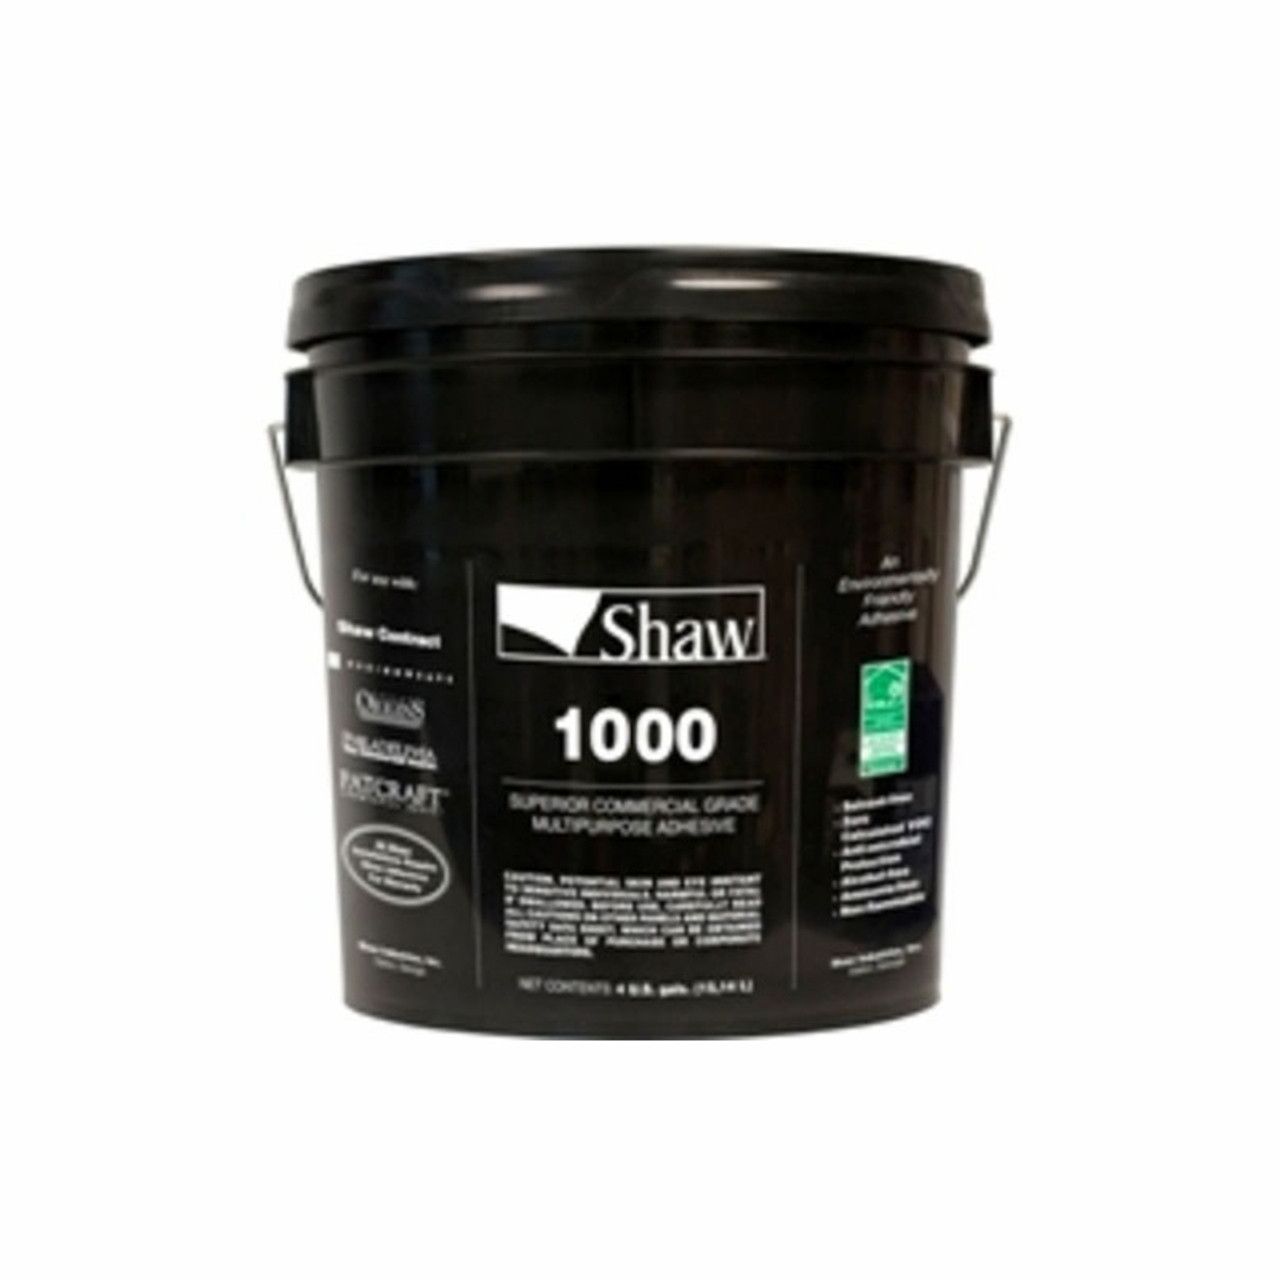 Buy Shaw Kwik Flash Adhesive at Georgia Carpet for Low Price